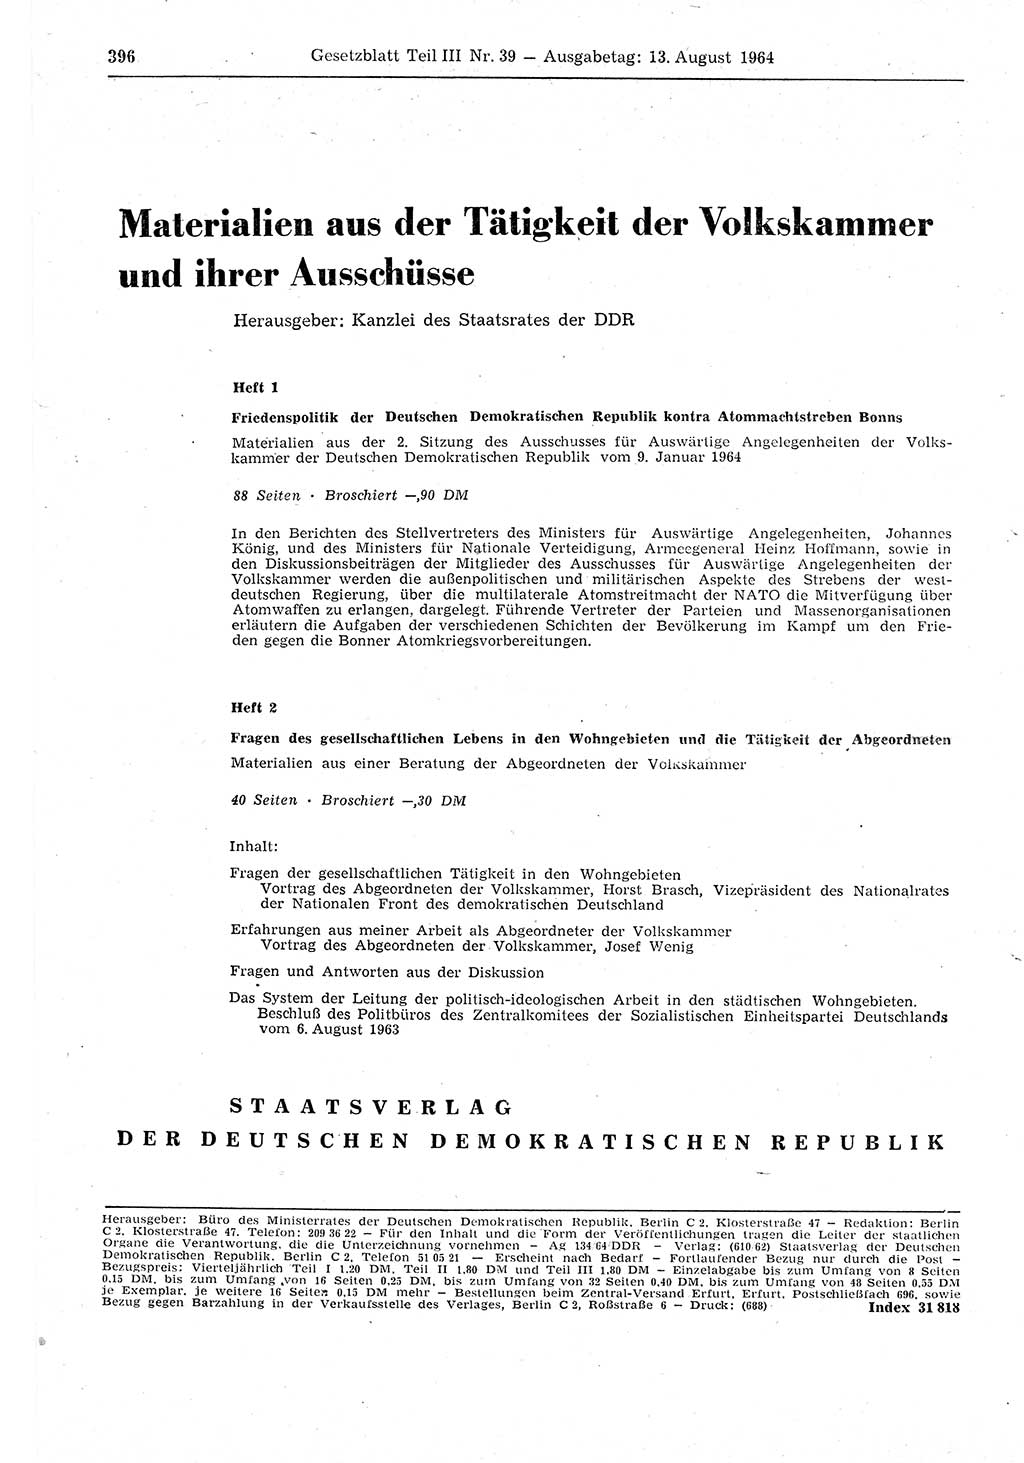 Gesetzblatt (GBl.) der Deutschen Demokratischen Republik (DDR) Teil ⅠⅠⅠ 1964, Seite 396 (GBl. DDR ⅠⅠⅠ 1964, S. 396)